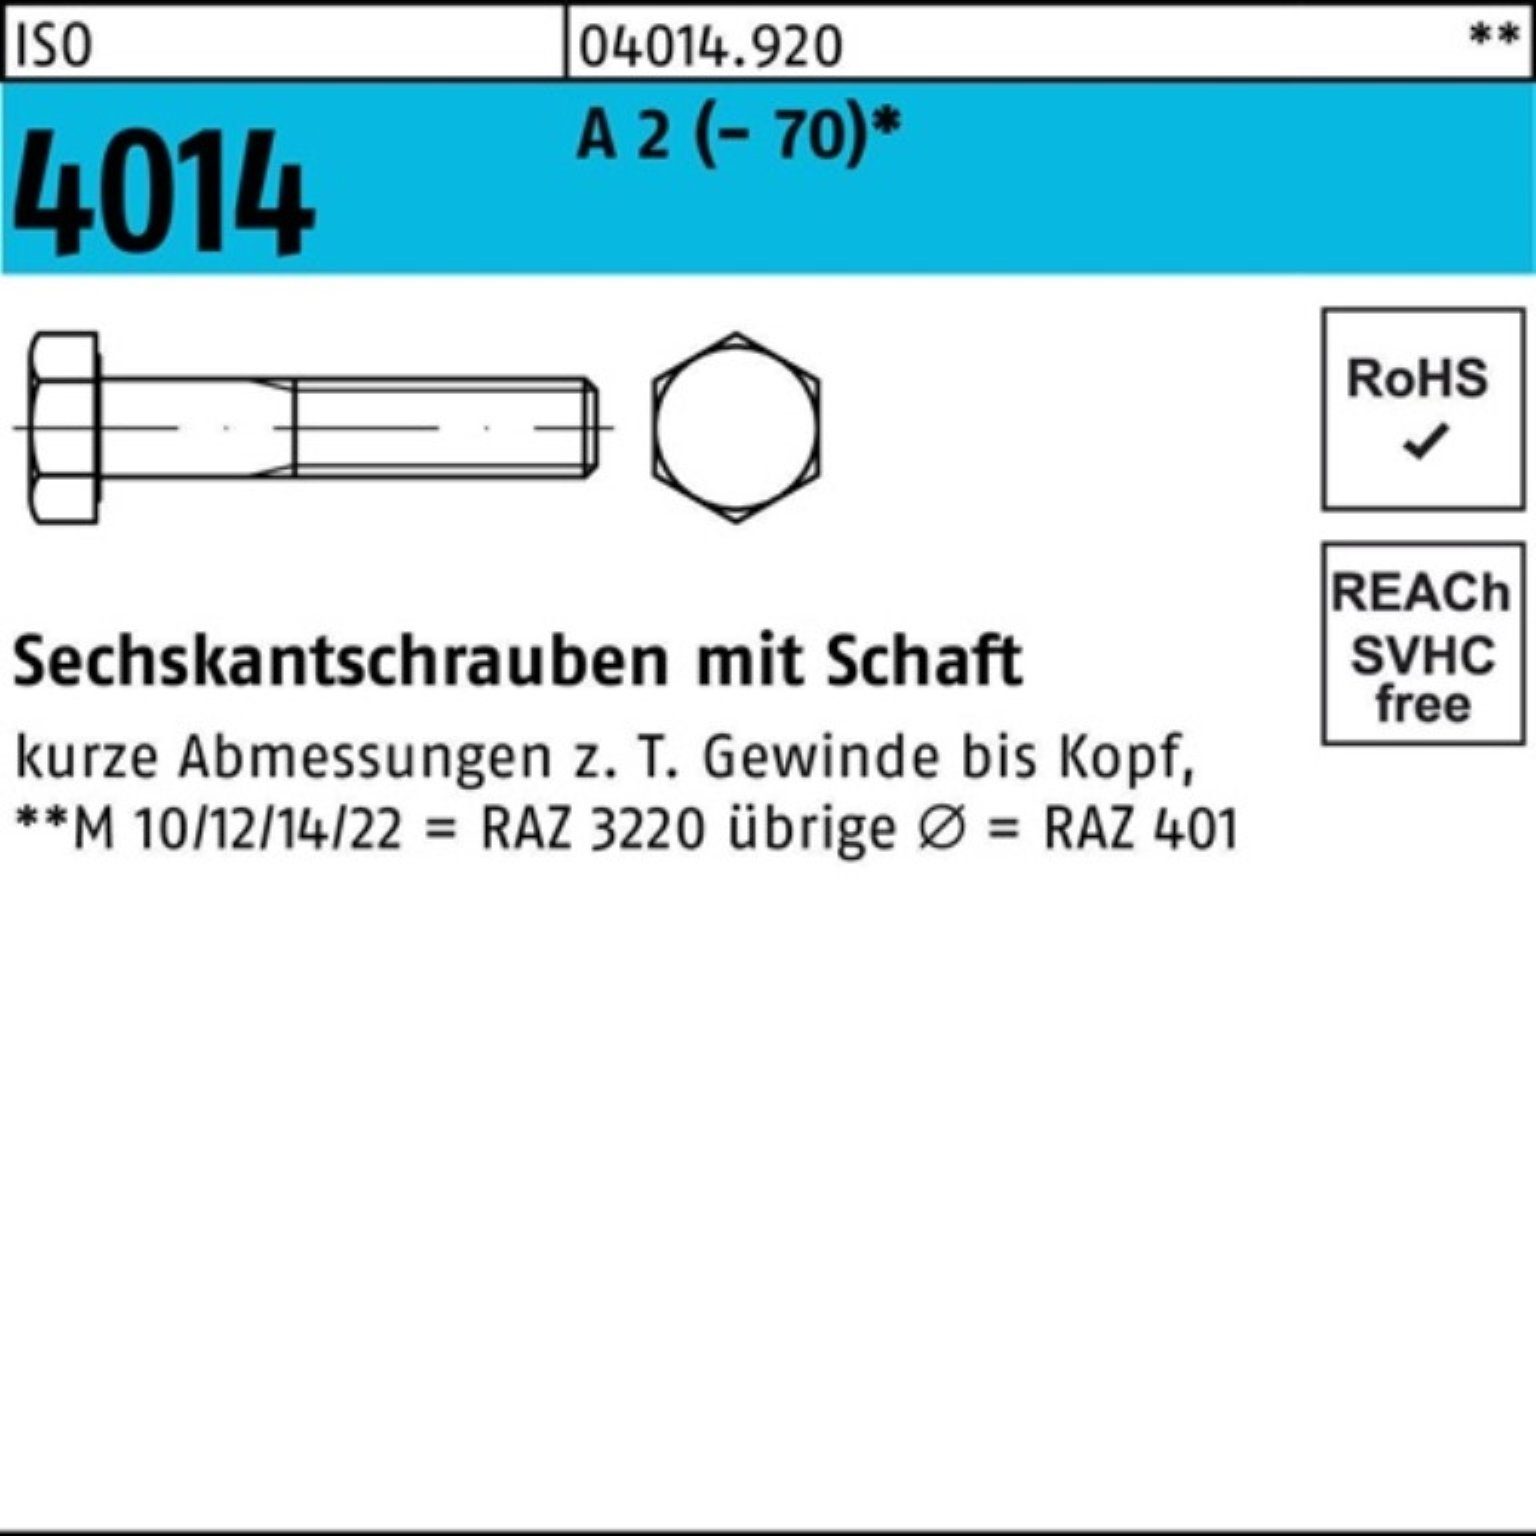 Bufab Sechskantschraube 100er Pack Sechskantschraube ISO 4014 Schaft M16x 240 A 2 (70) 1 St